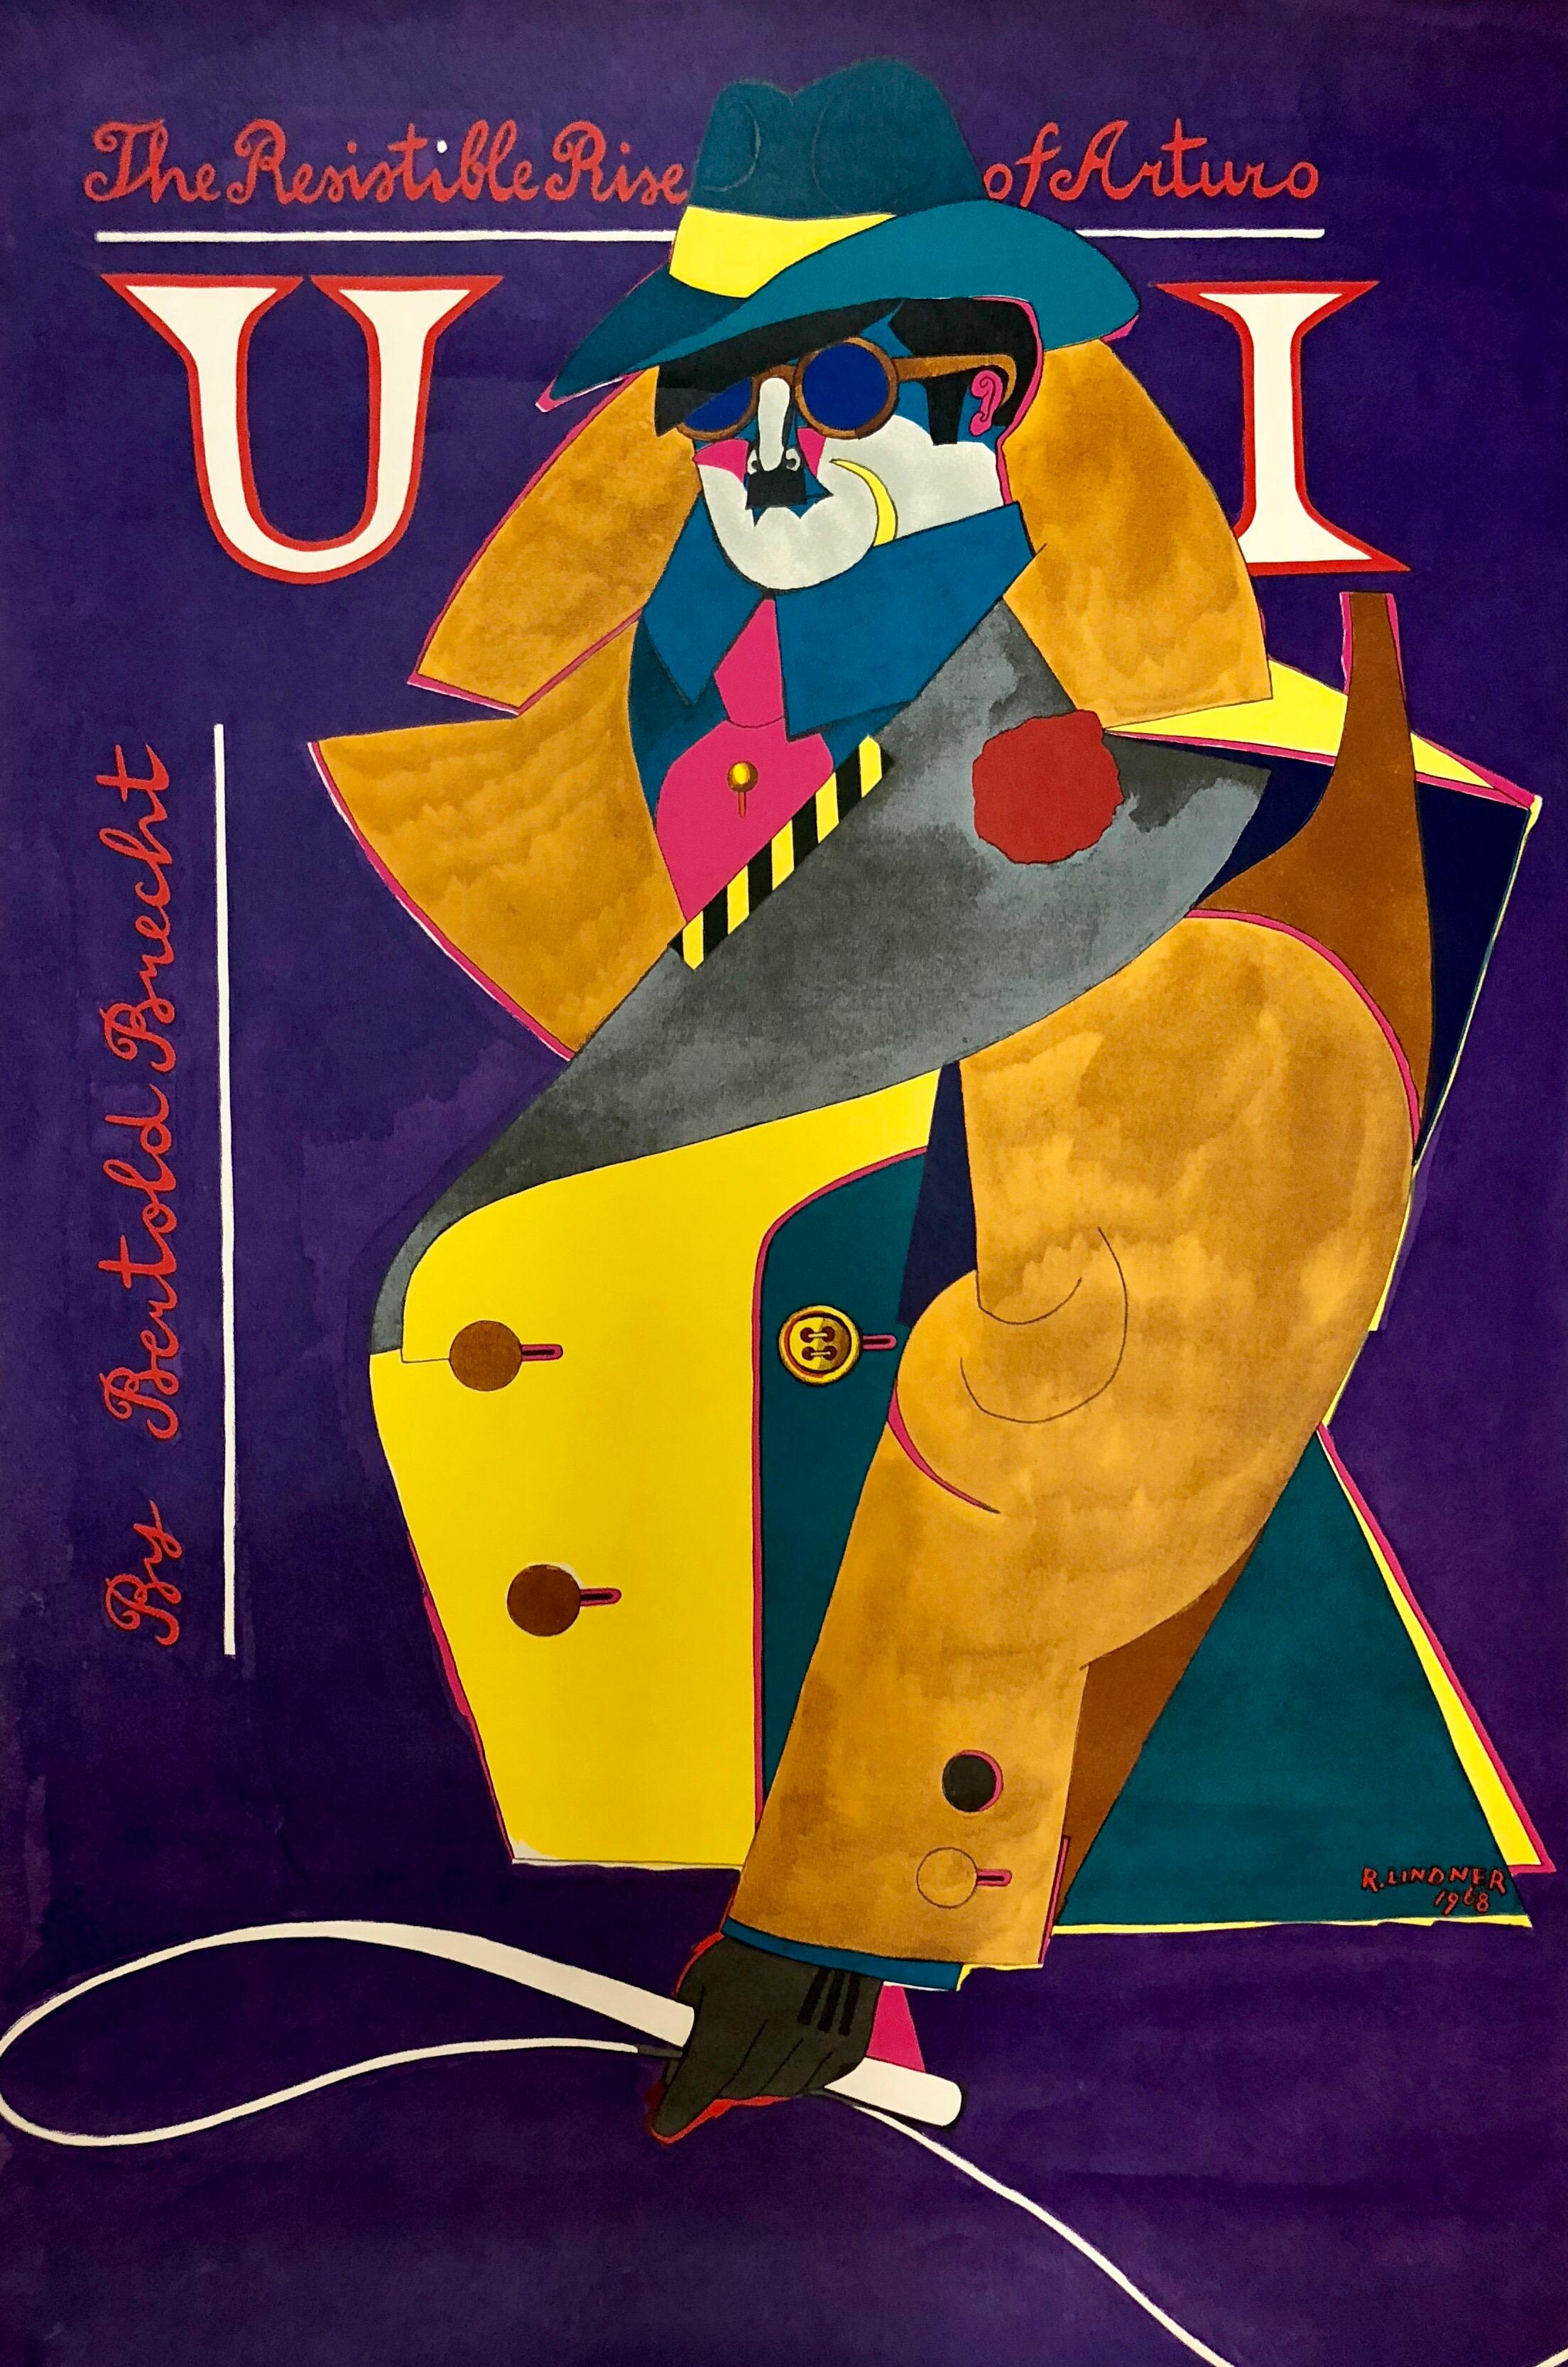 Offset Lithograph Poster Resistible Rise of Arturo, Bertold Brecht 1968 Pop Art